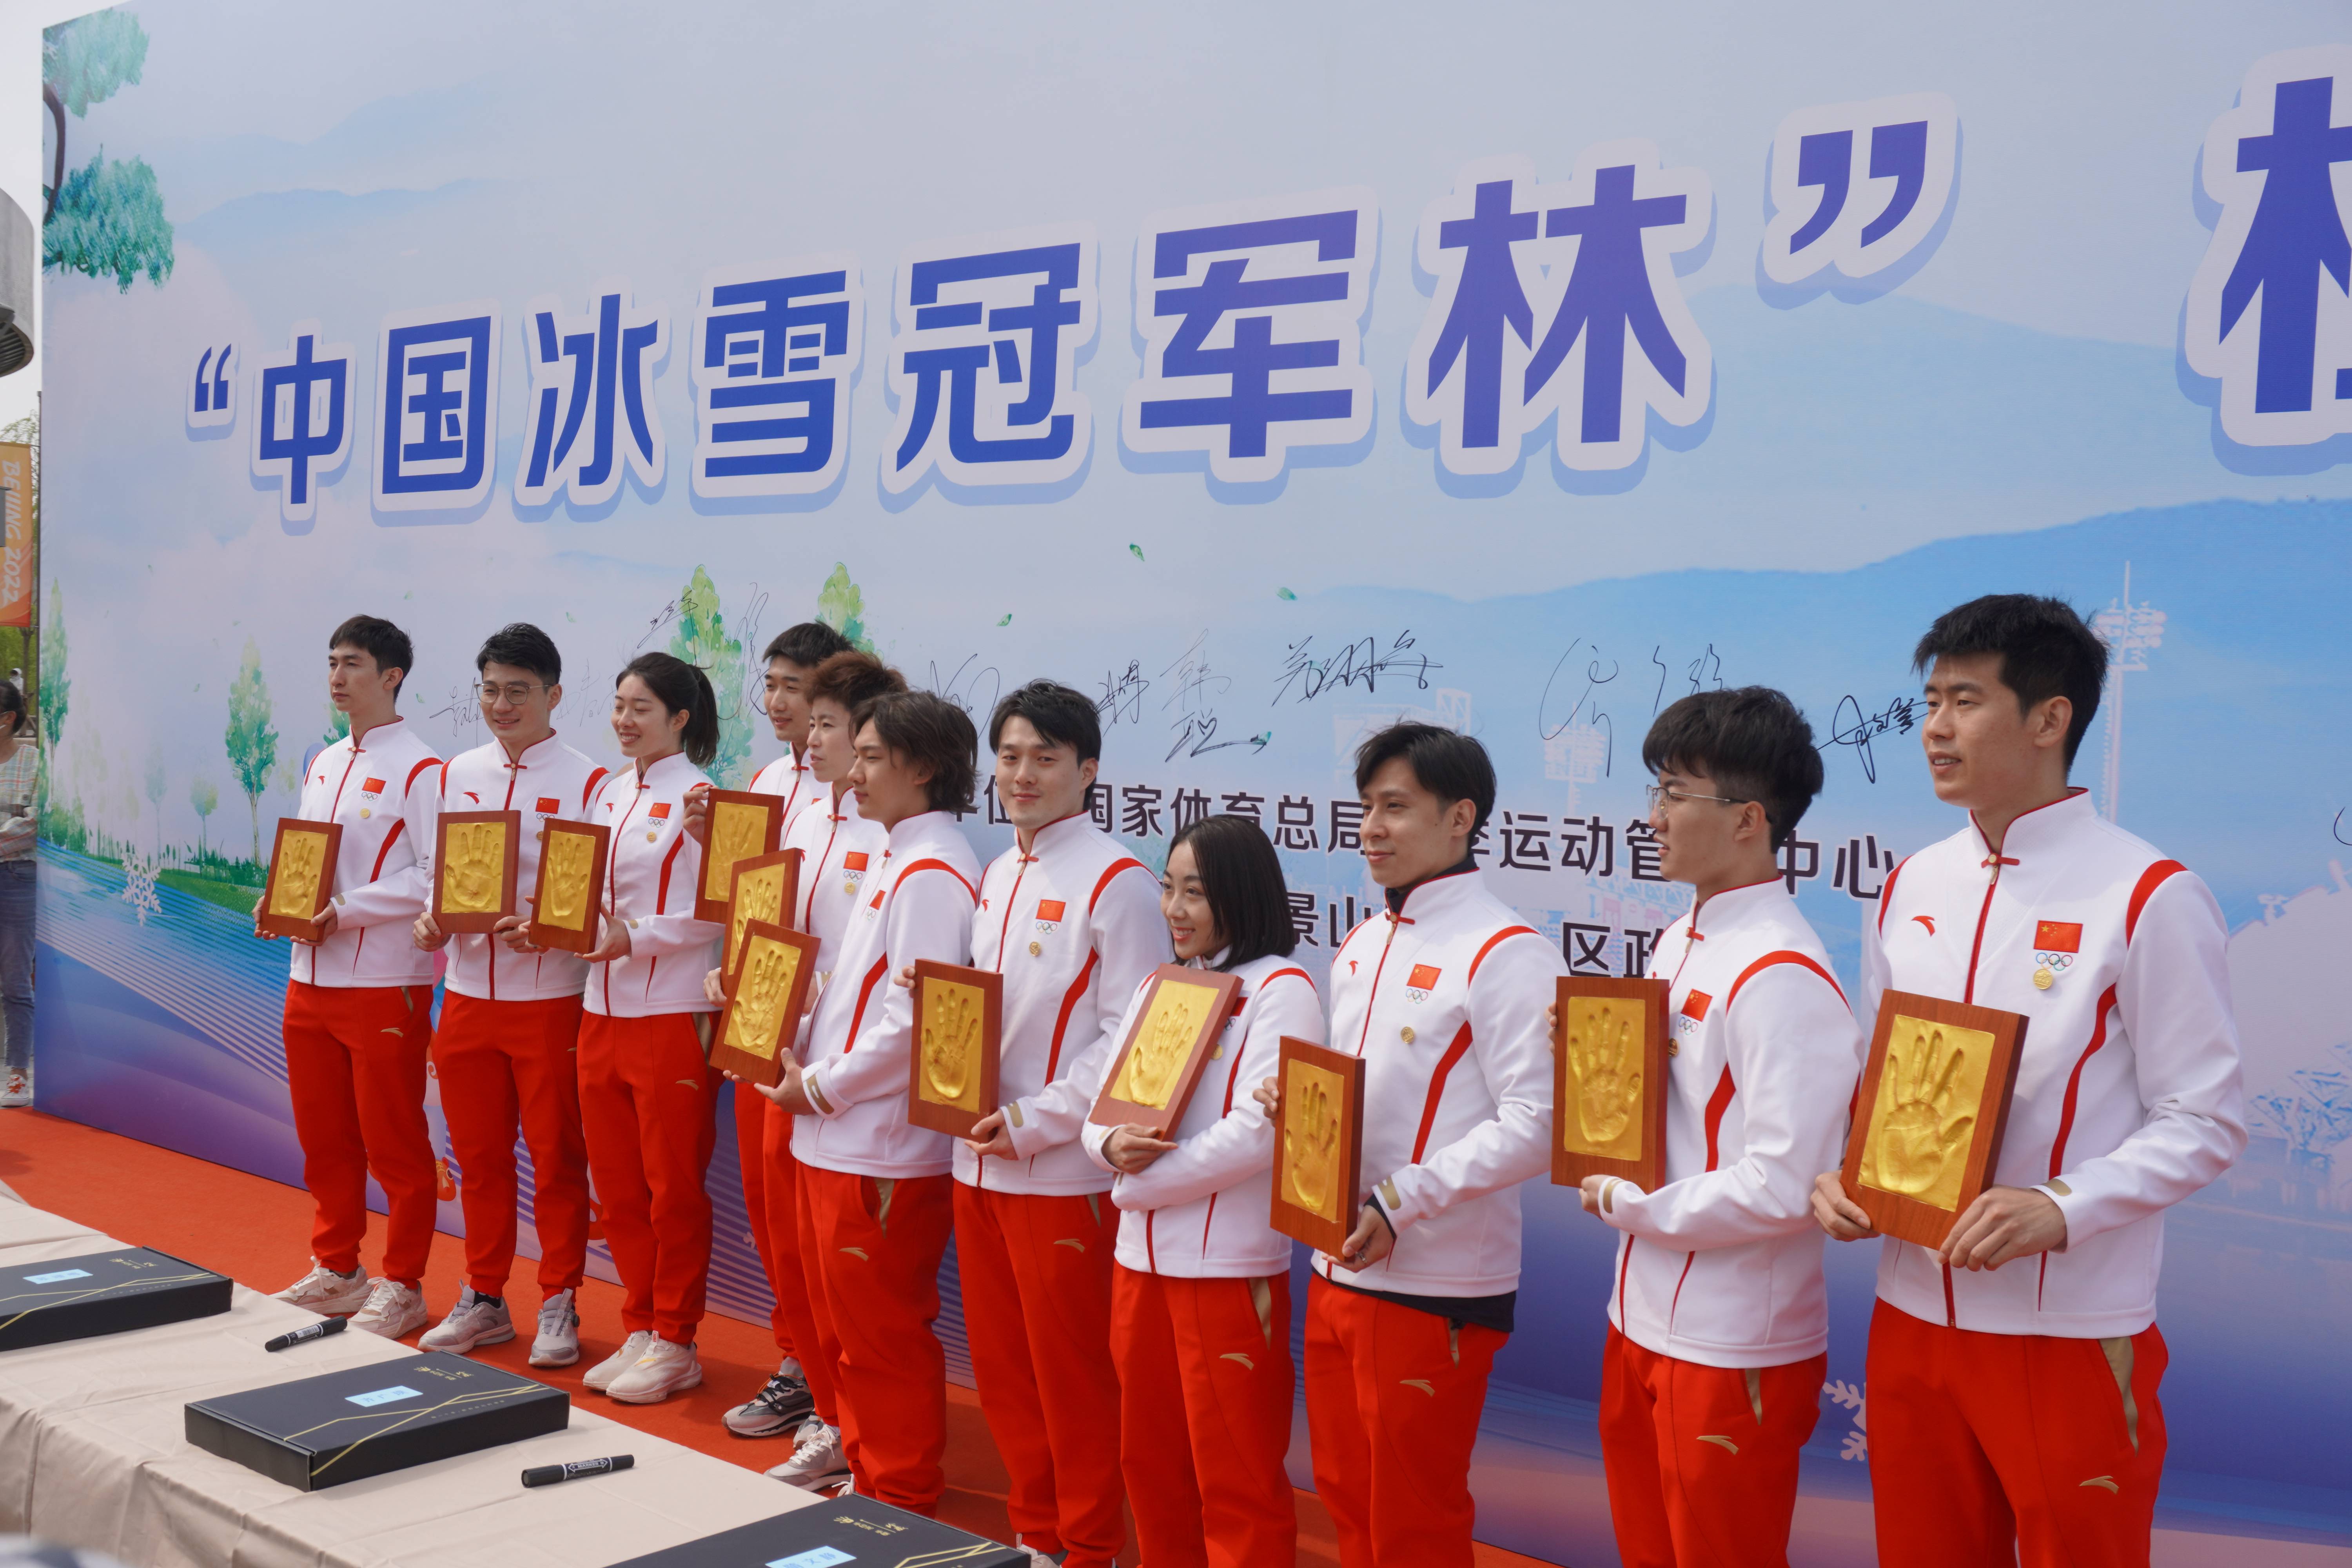 北京冬奥会后首场冰雪项目国家队公益服务活动在京举行